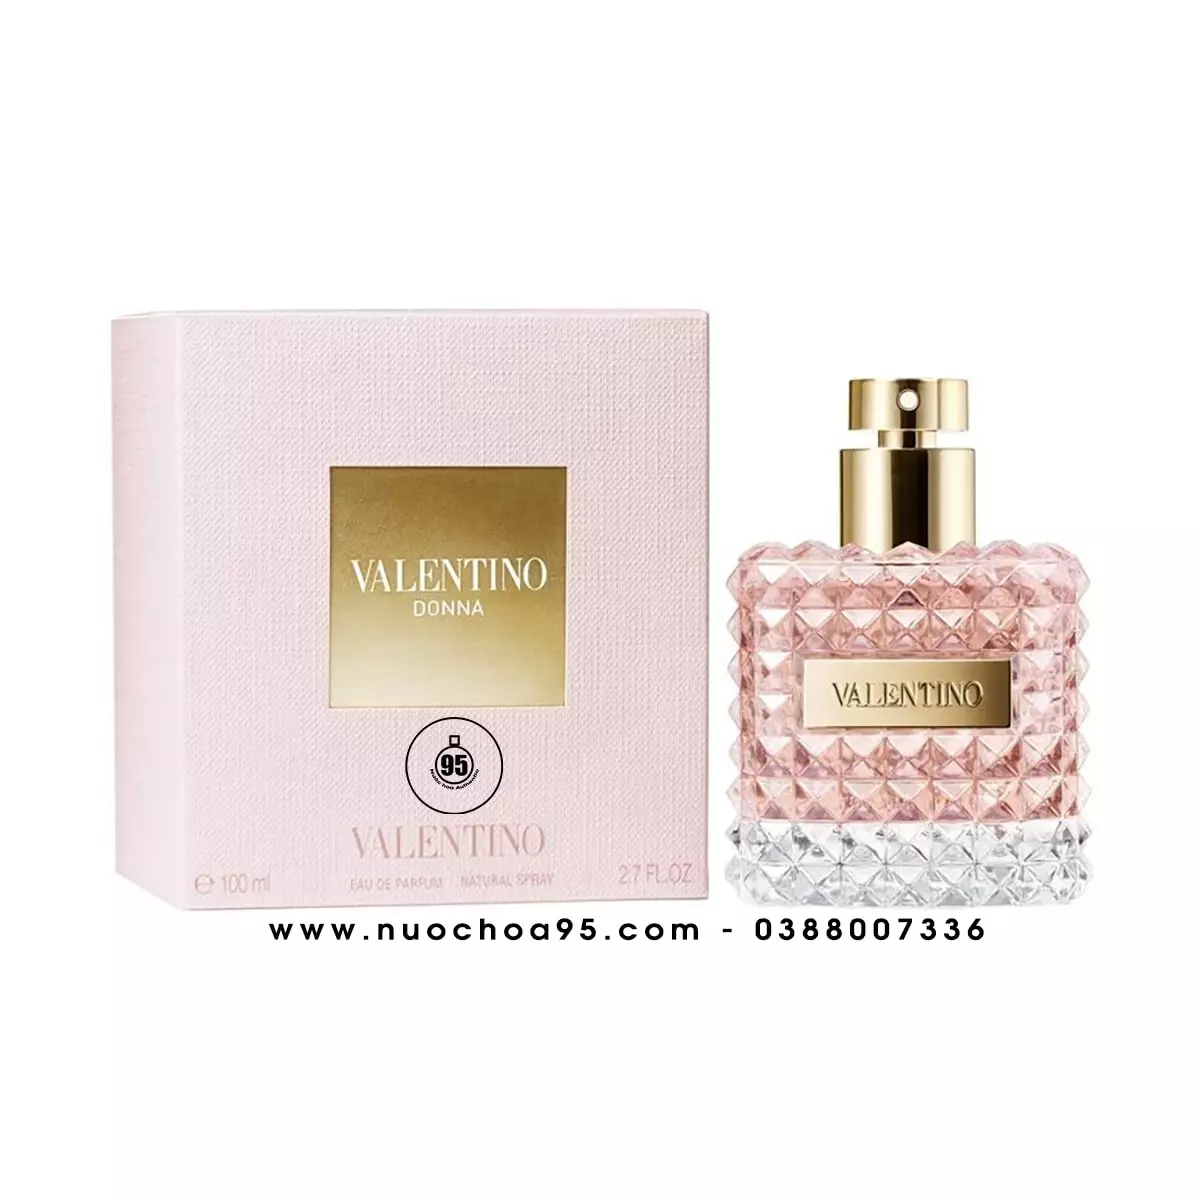 Nước hoa Valentino Donna Eau De Parfum